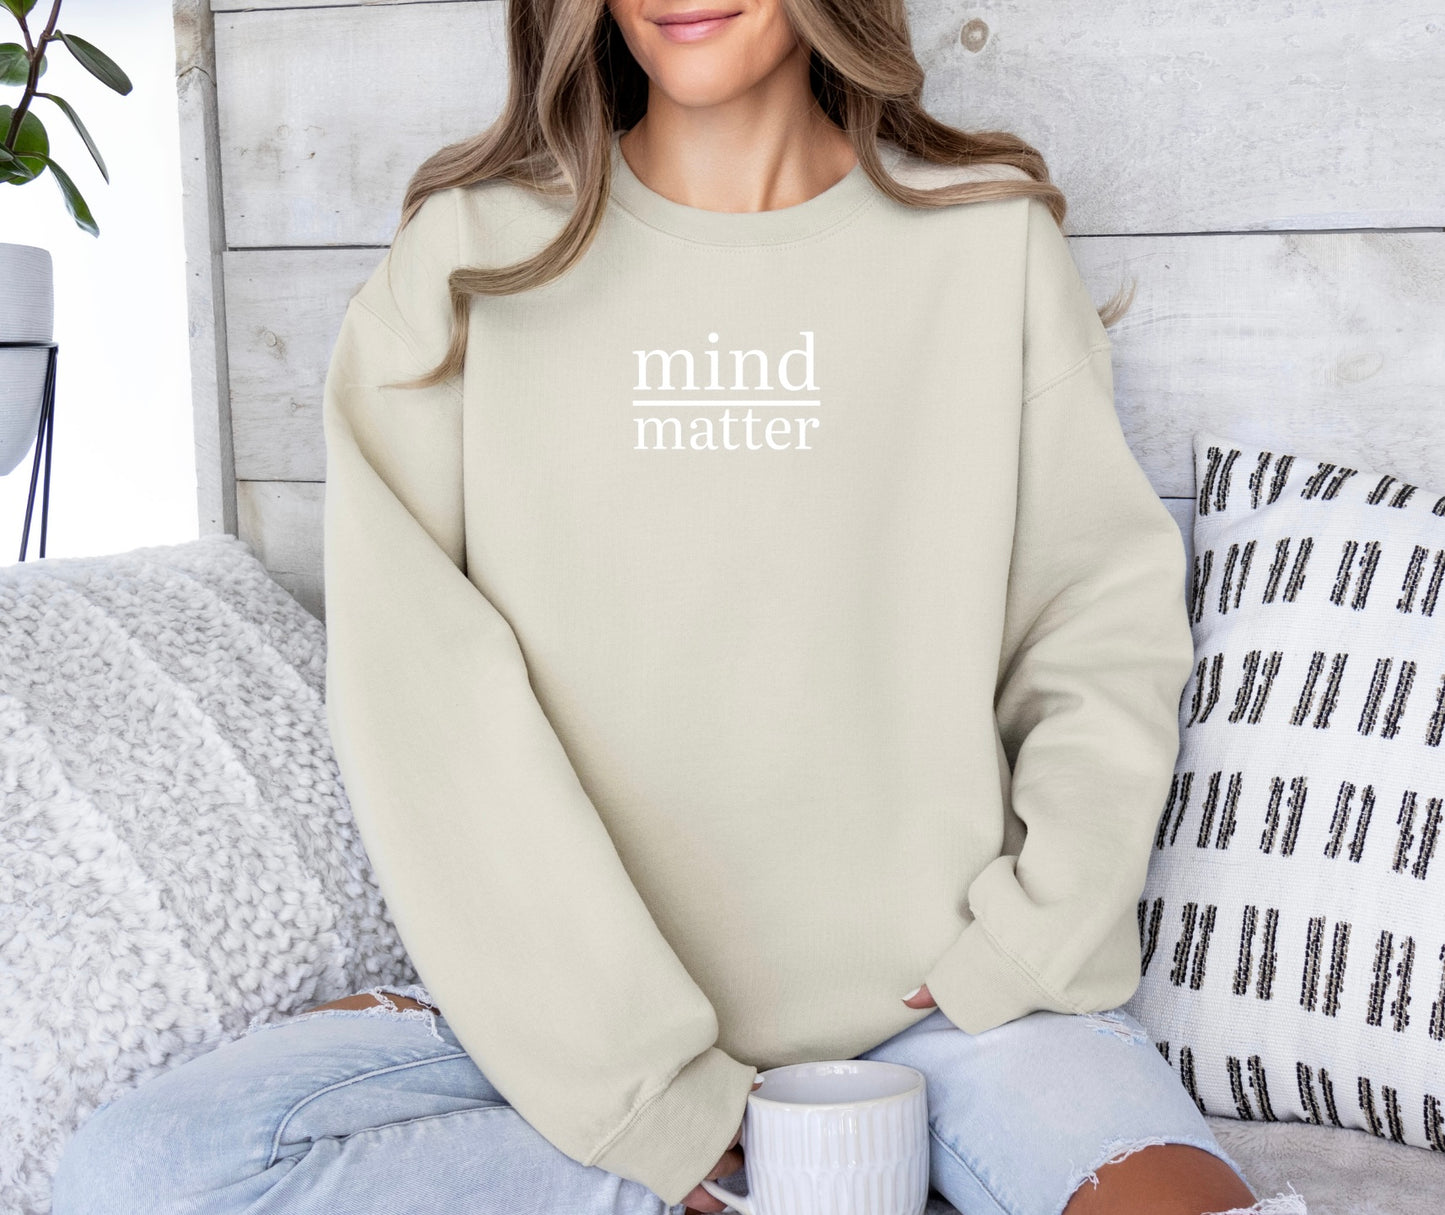 Mind Over Matter Shirt, Mind Over Matter Sweater, Mind Over Matter Sweatshirt, Mind Over Matter Hoodie, Mental Health Shirt, Break Up Shirt